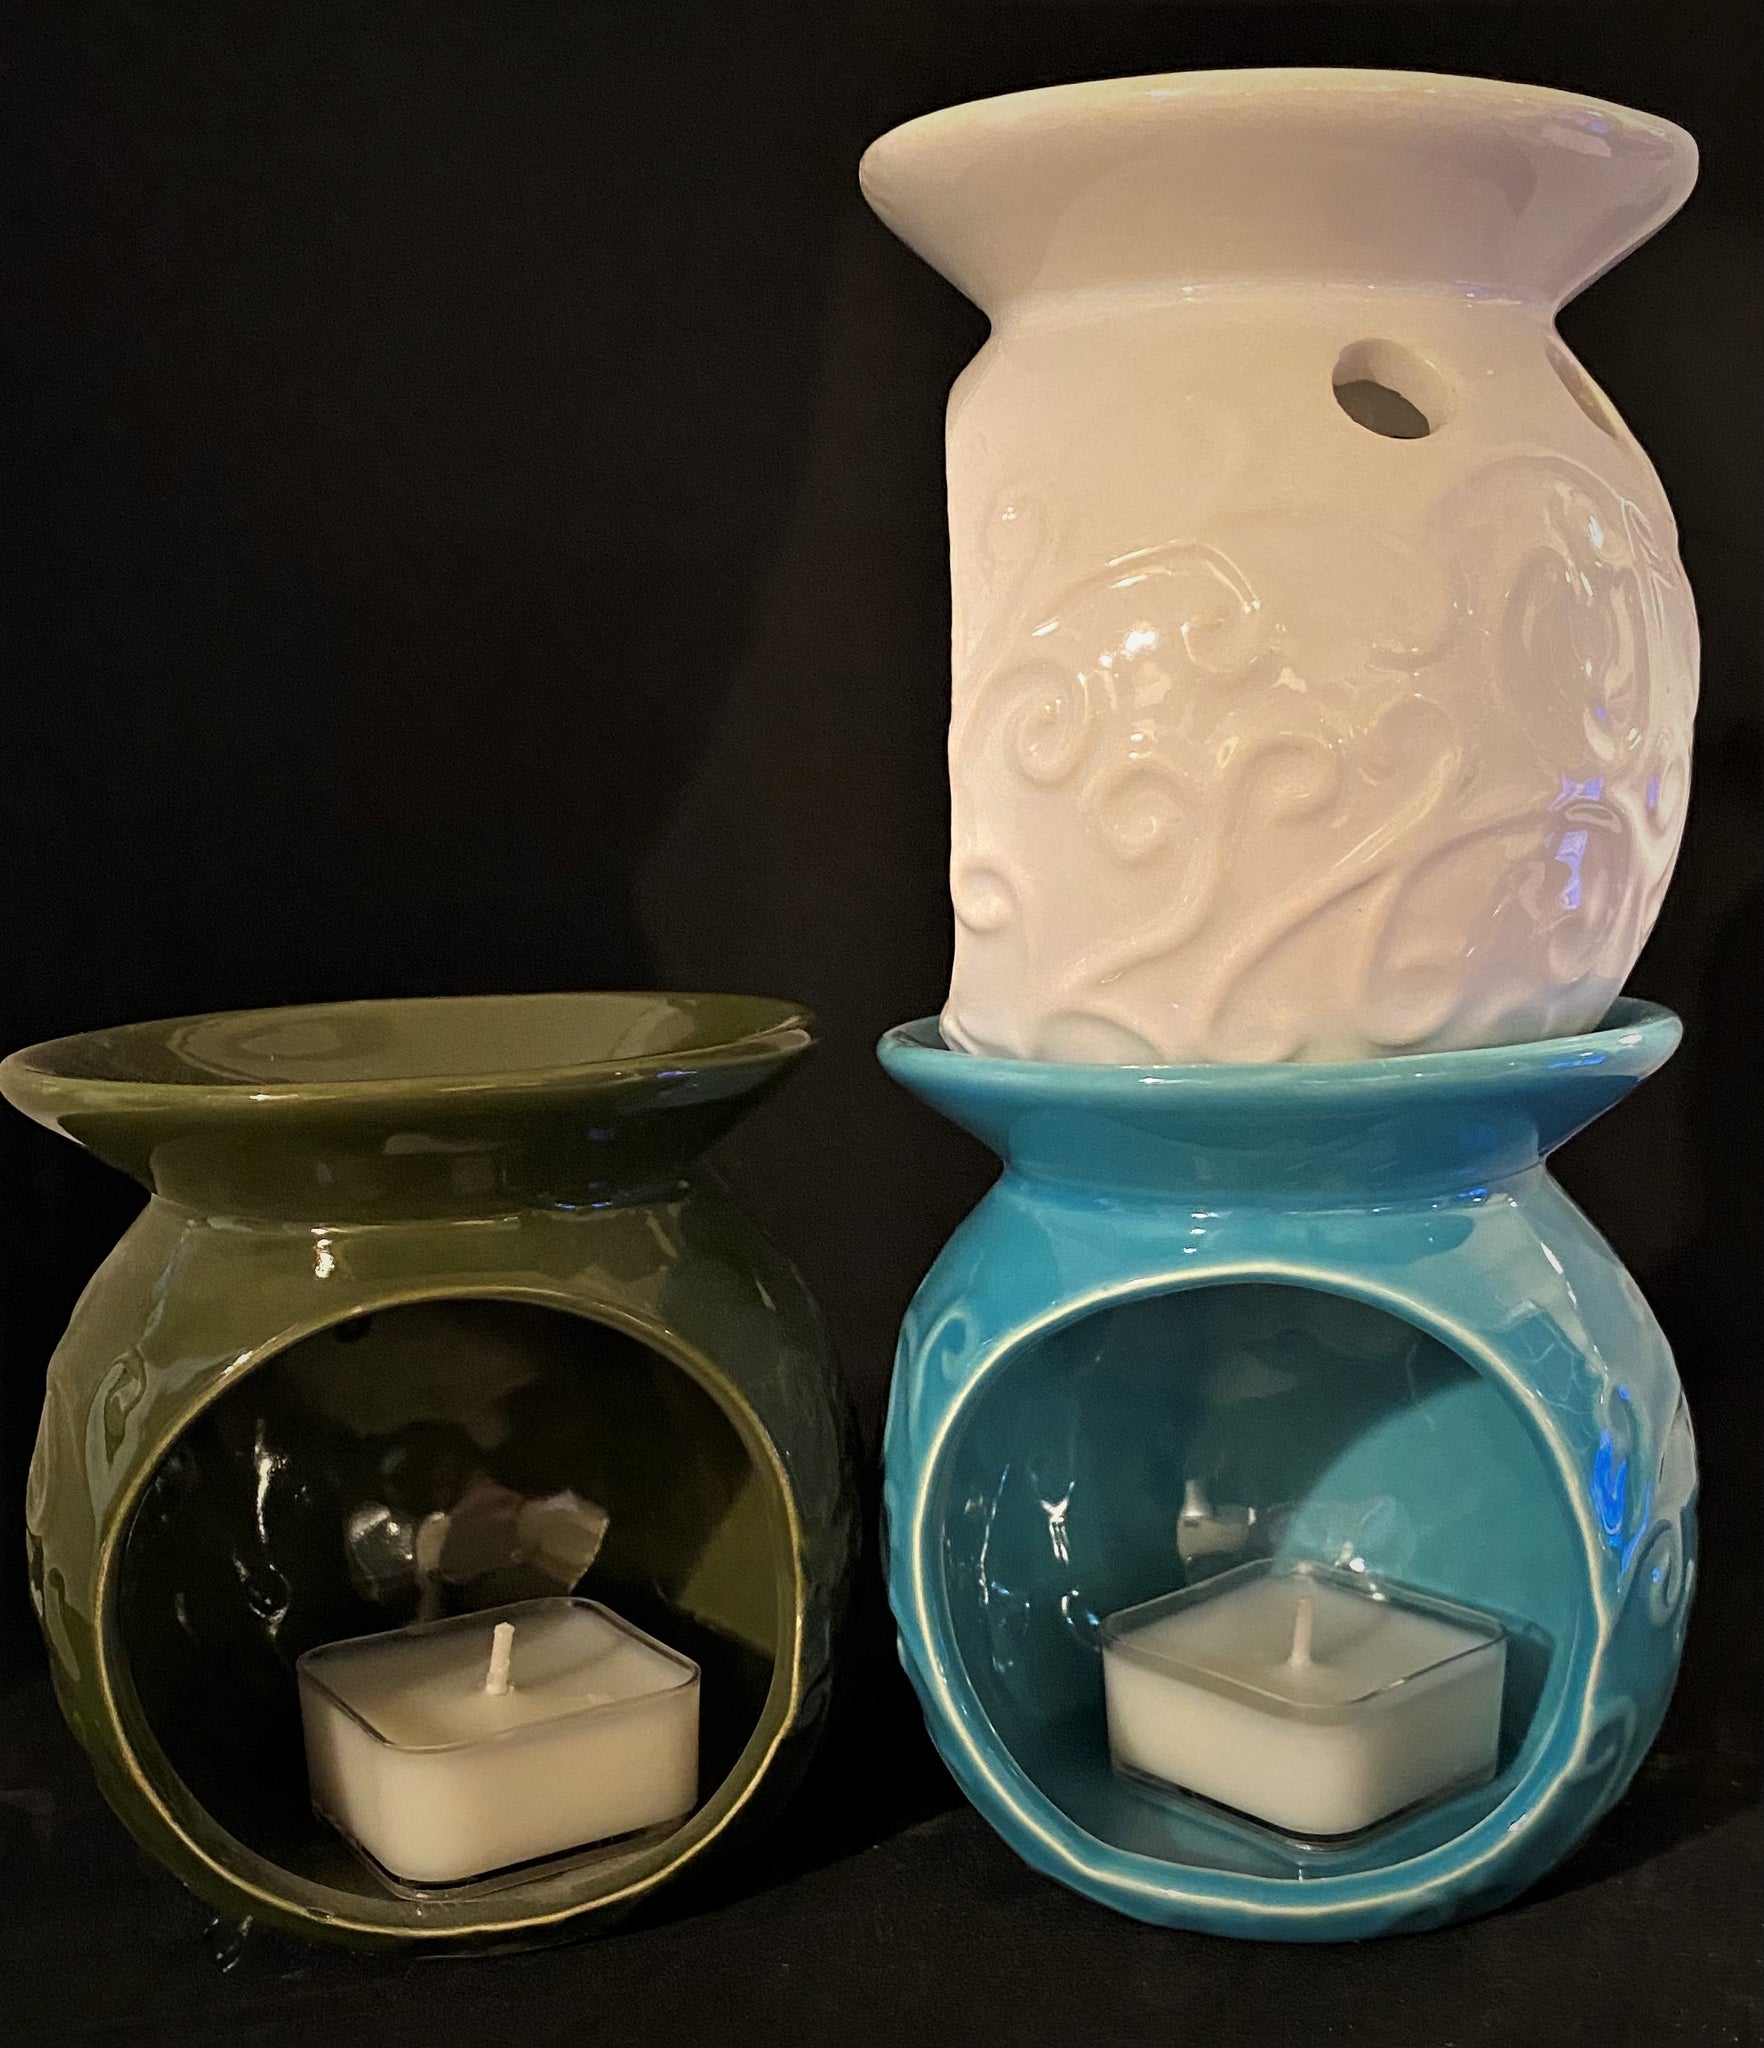 Ceramic Wax melt Warmer – ili lusso